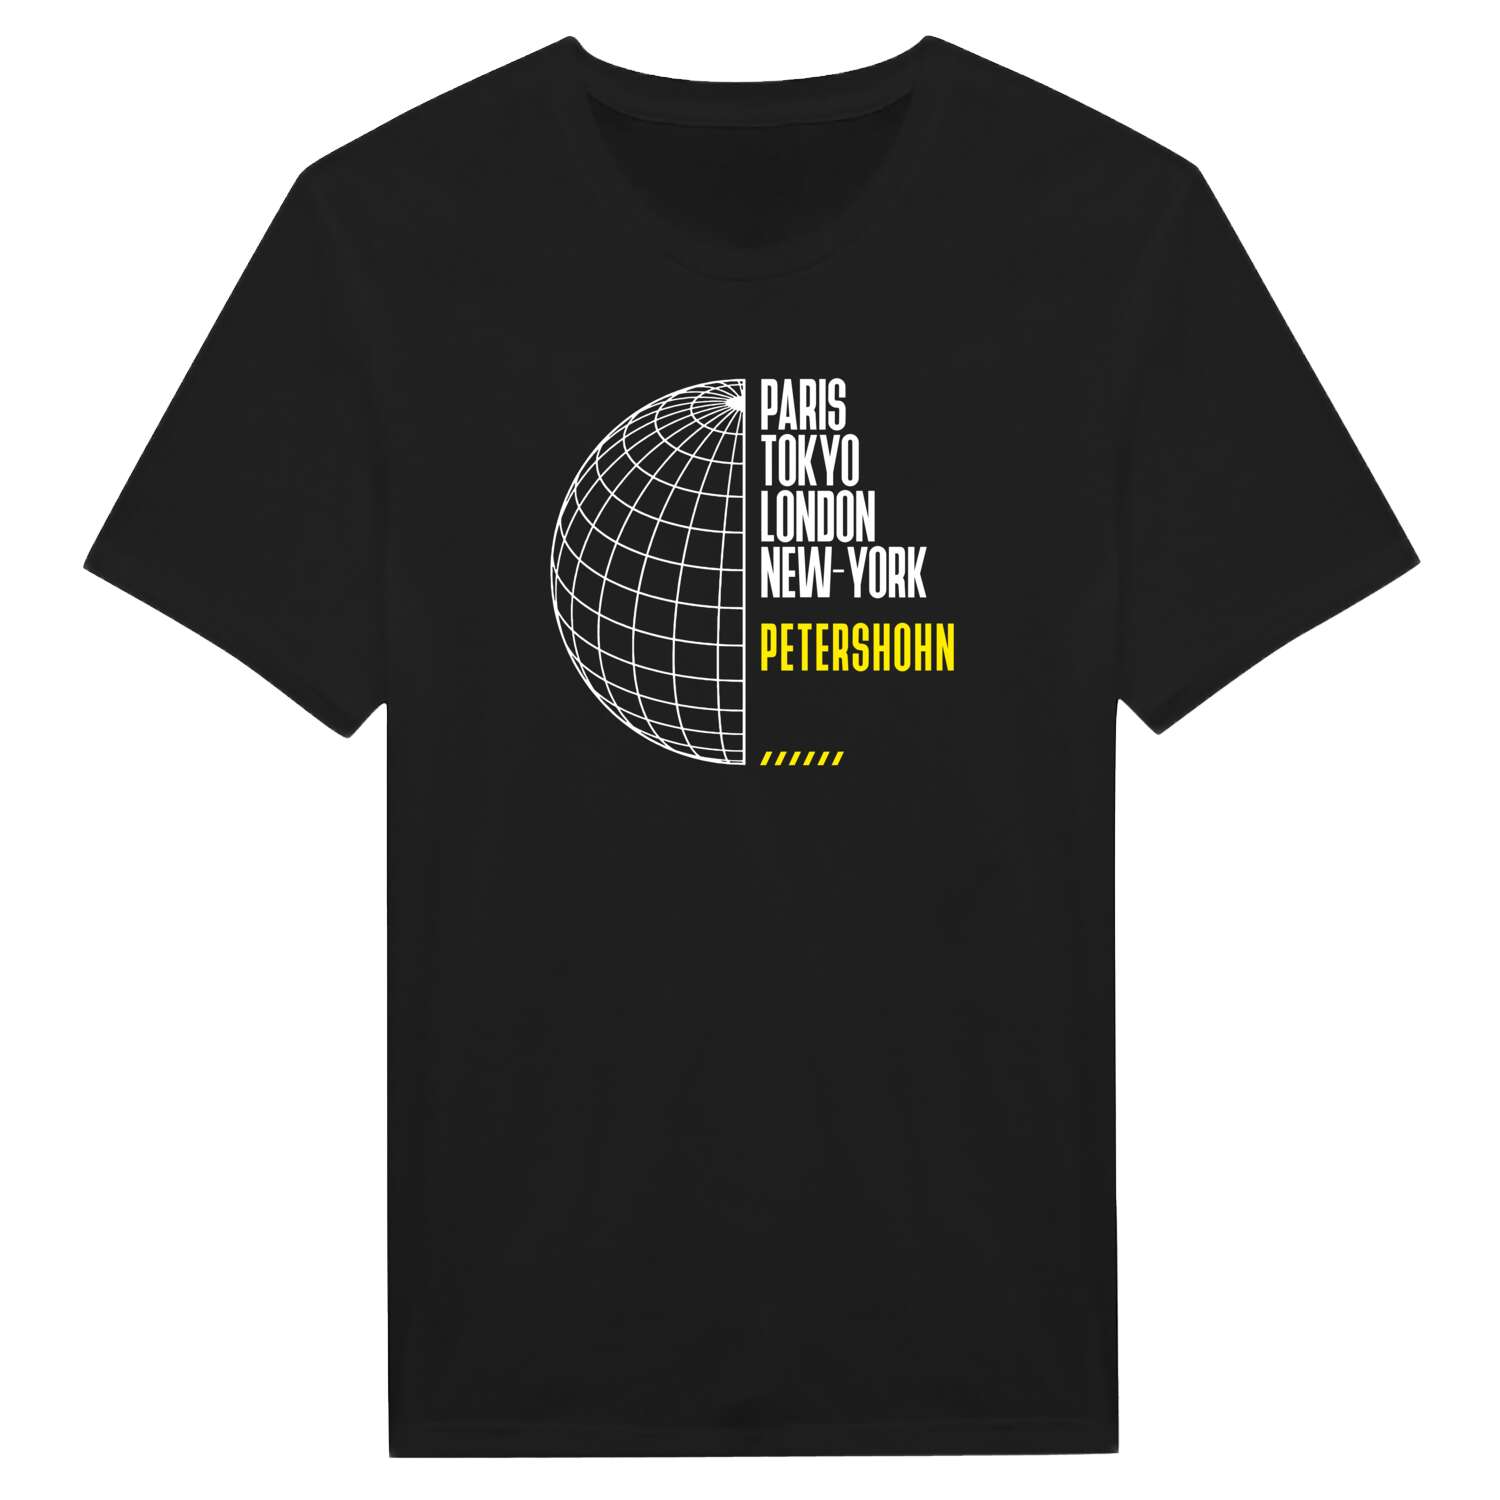 Petershohn T-Shirt »Paris Tokyo London«